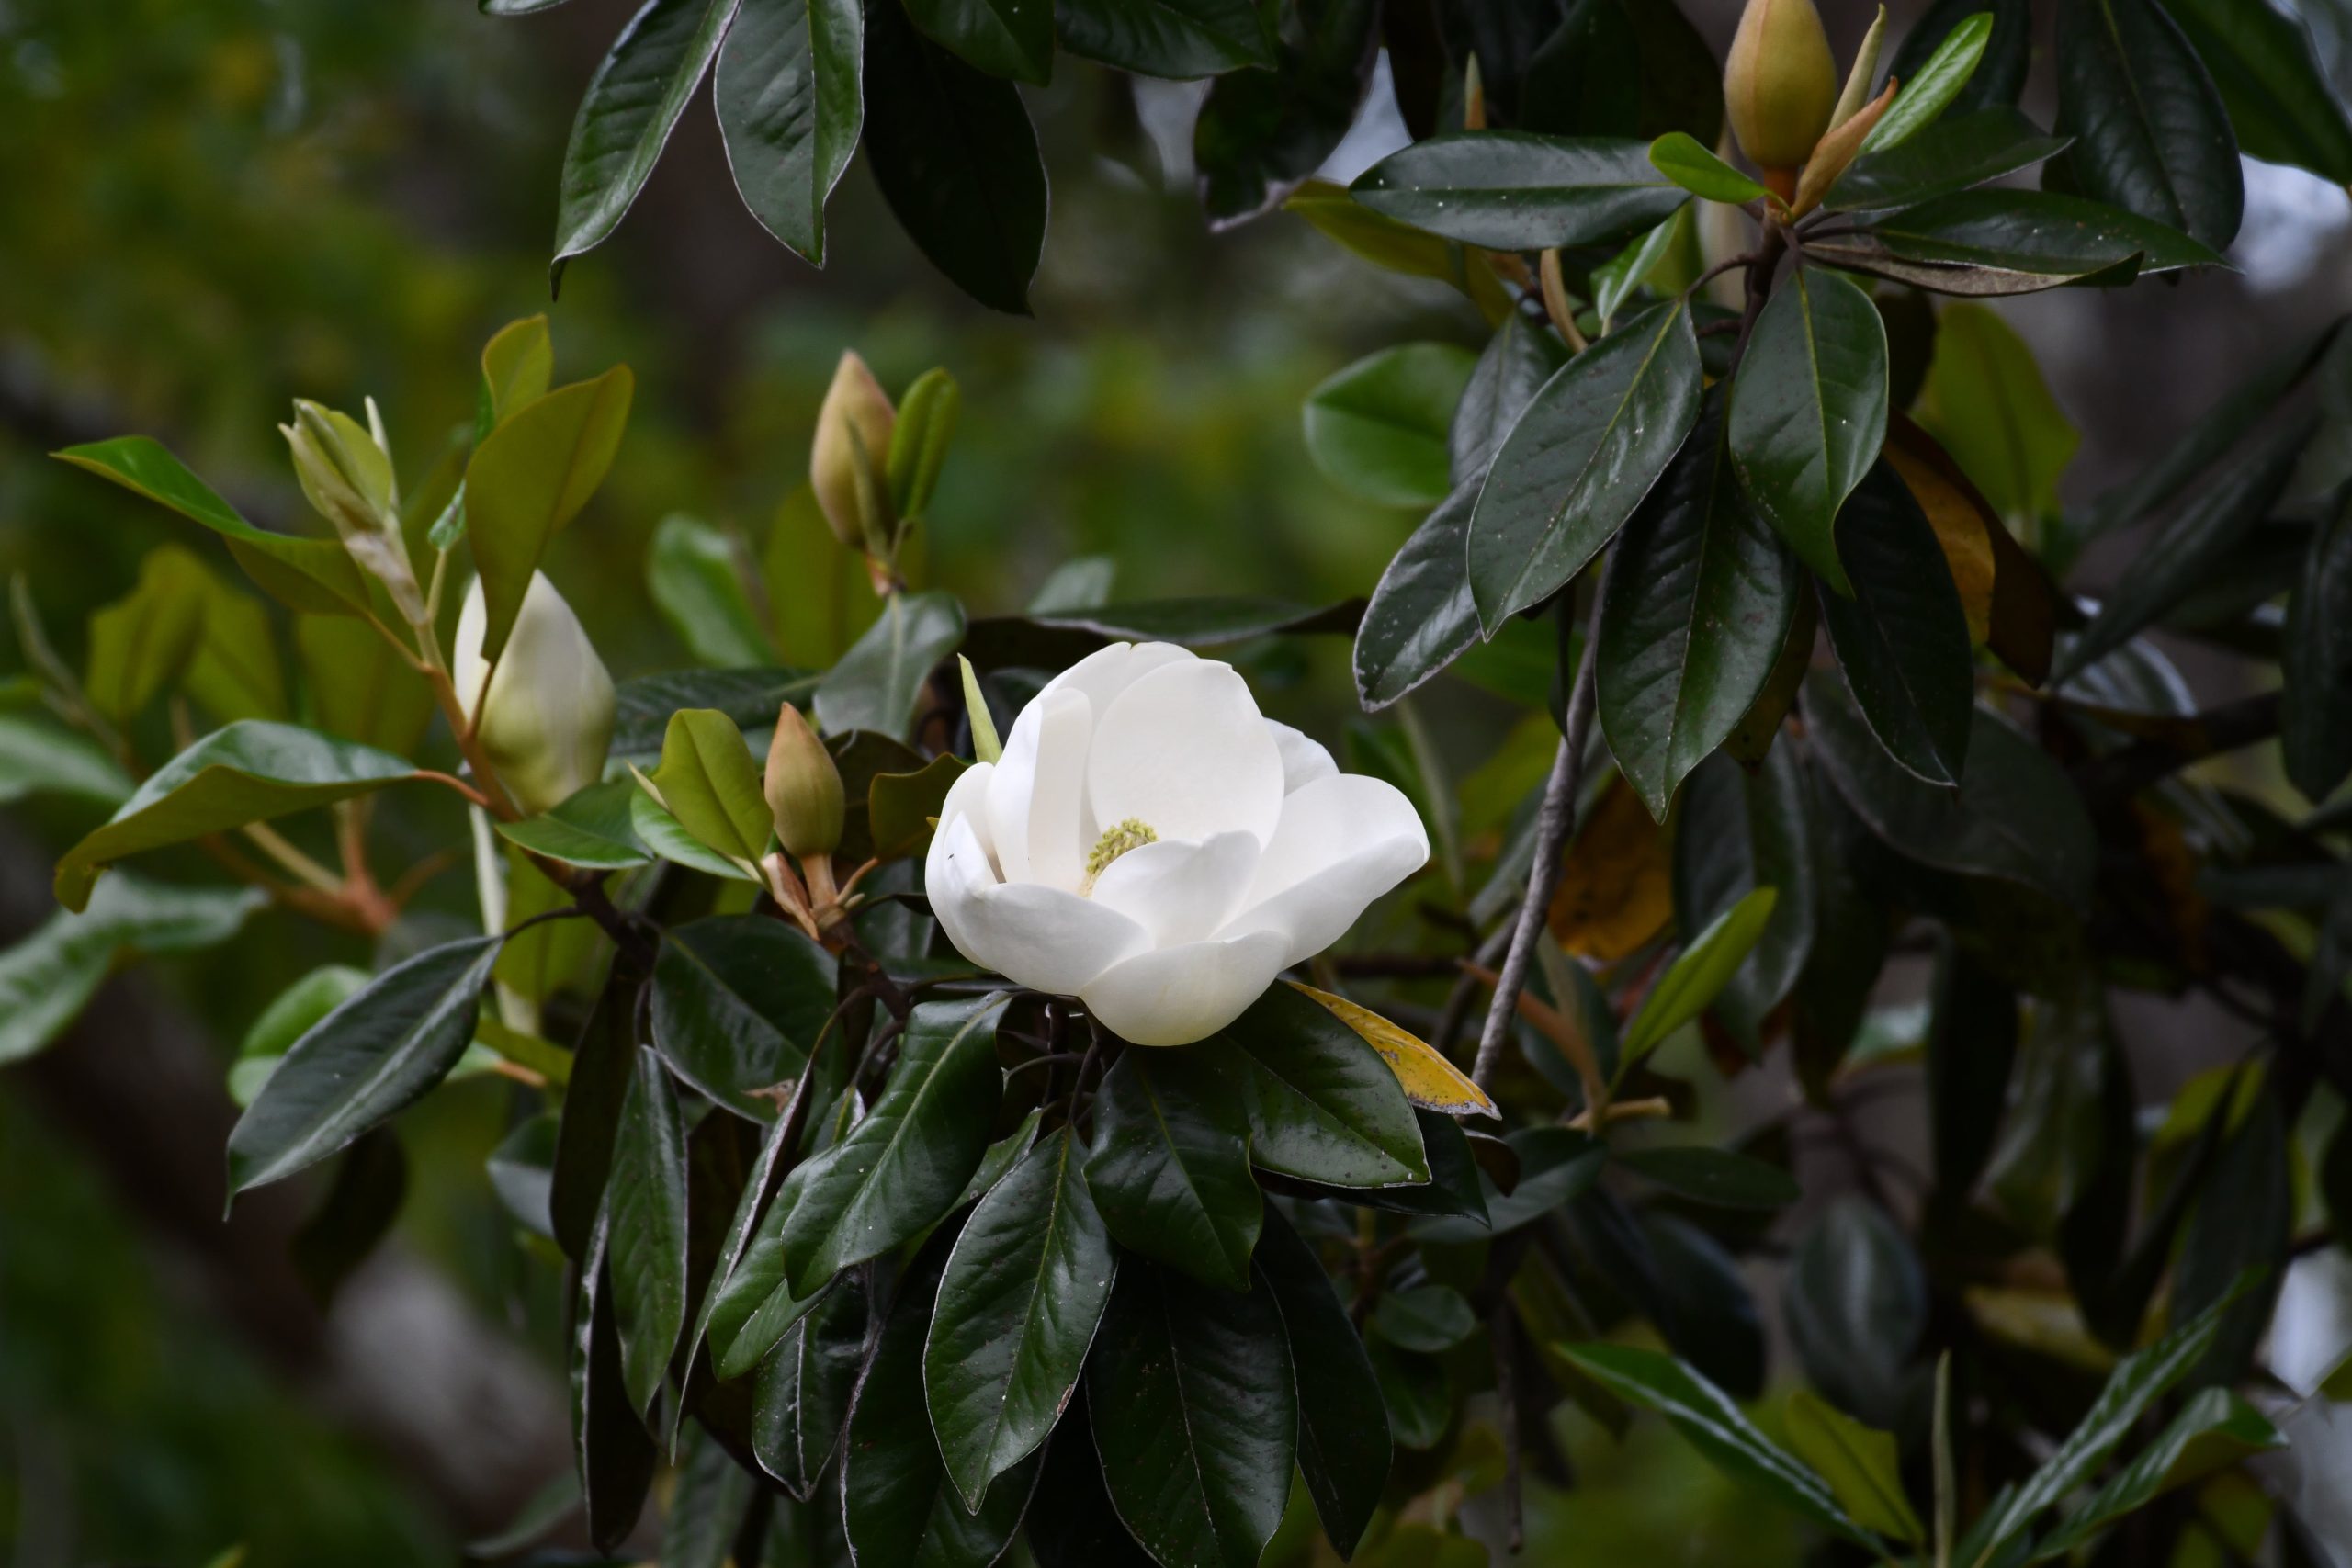 dettaglio di una magnolia in fioritura, pianta d'importazone in italia